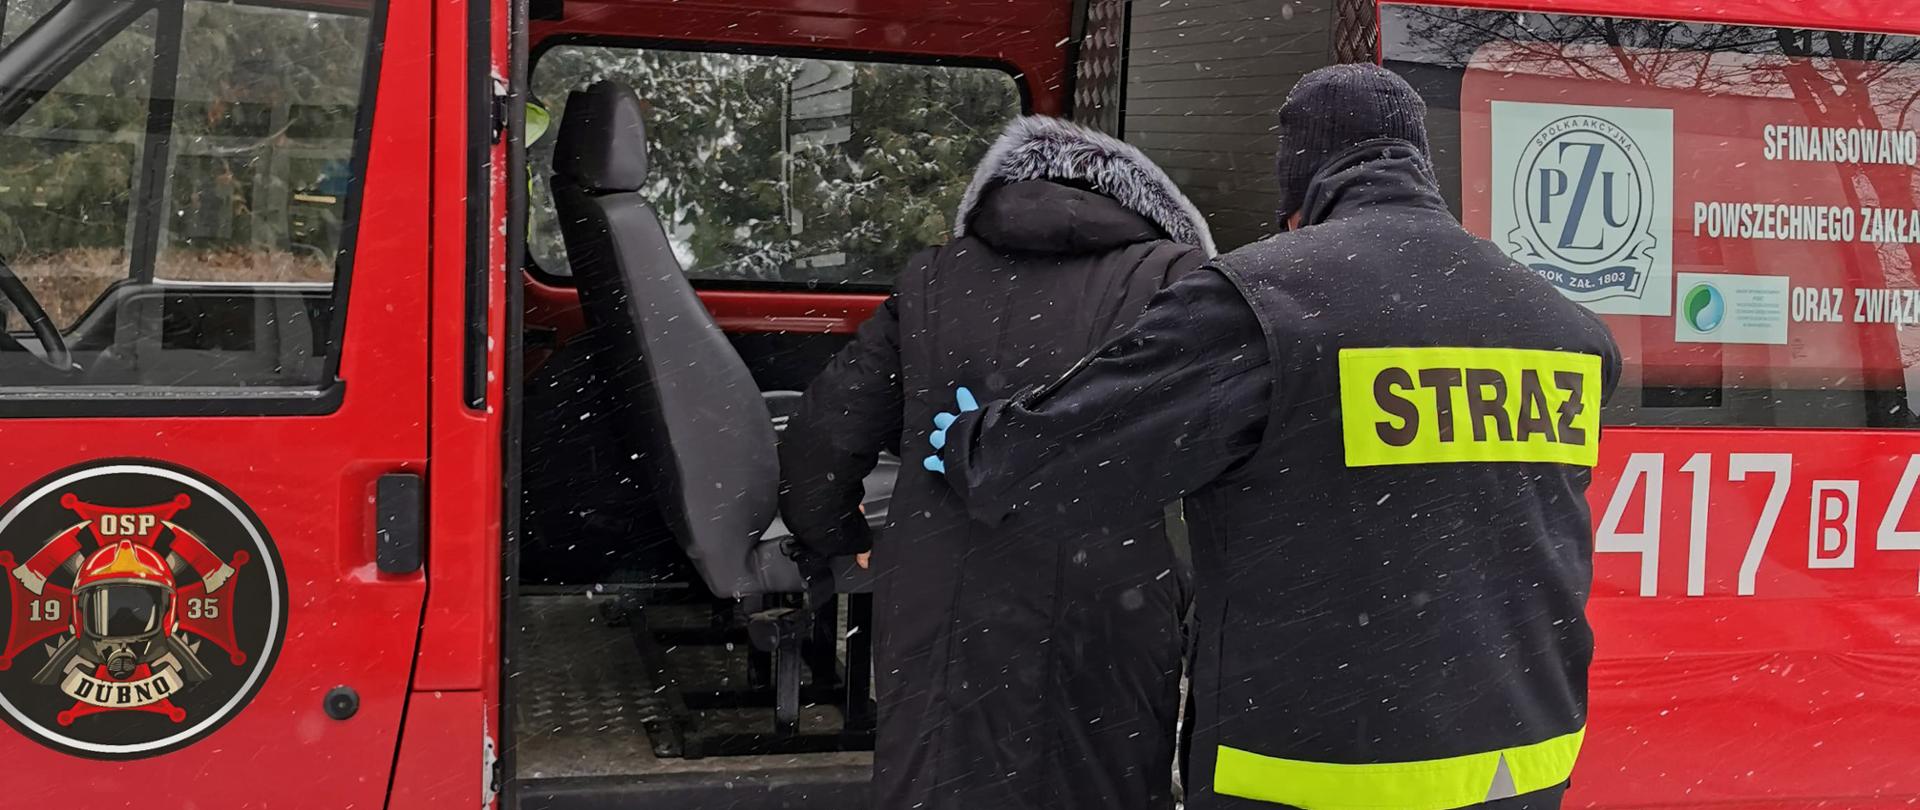 Strażak OSP Dubno pomagający wejść starszej osobie do samochodu pożarniczego w ramach pomocy w dotarciu do punktów szczepień osobom, które nie mogą tam dojechać we własnym zakresie. Działania prowadzone w ramach ogólnopolskiej akcji szczepień przeciw COVID-19